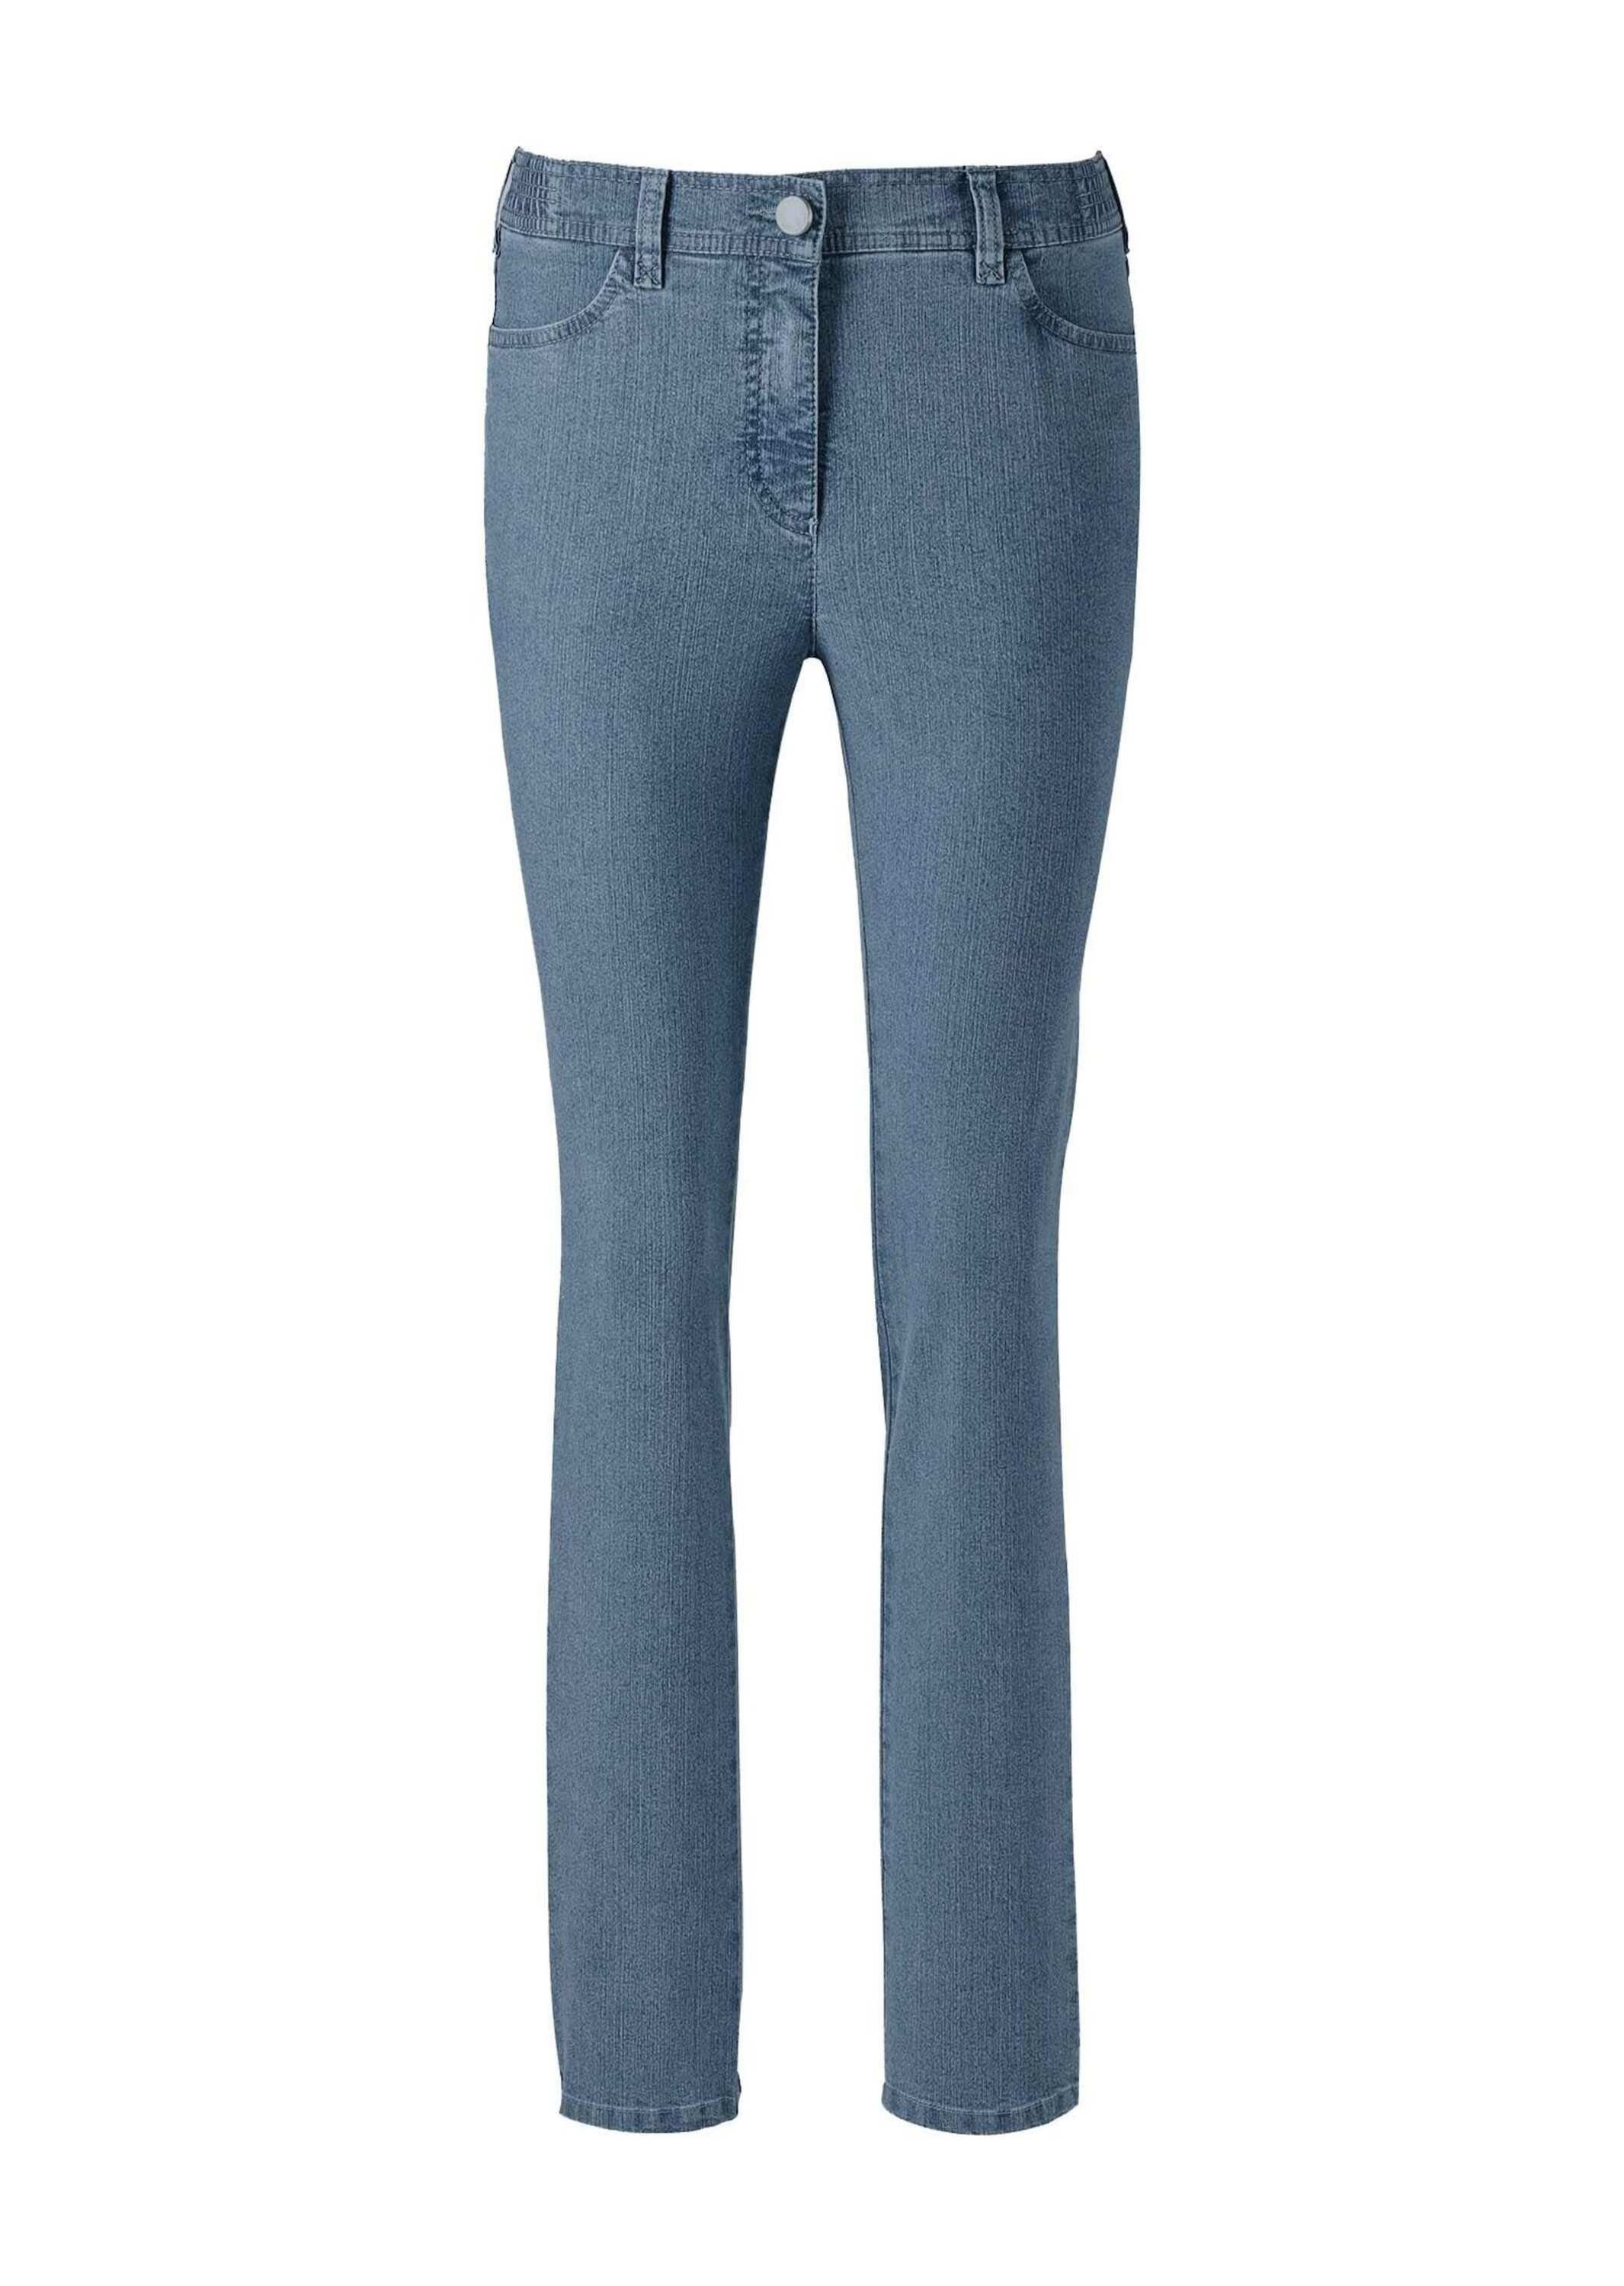 Bequeme Jeanshose hellblau Kurzgröße: ANNA Klassische GOLDNER Jeans